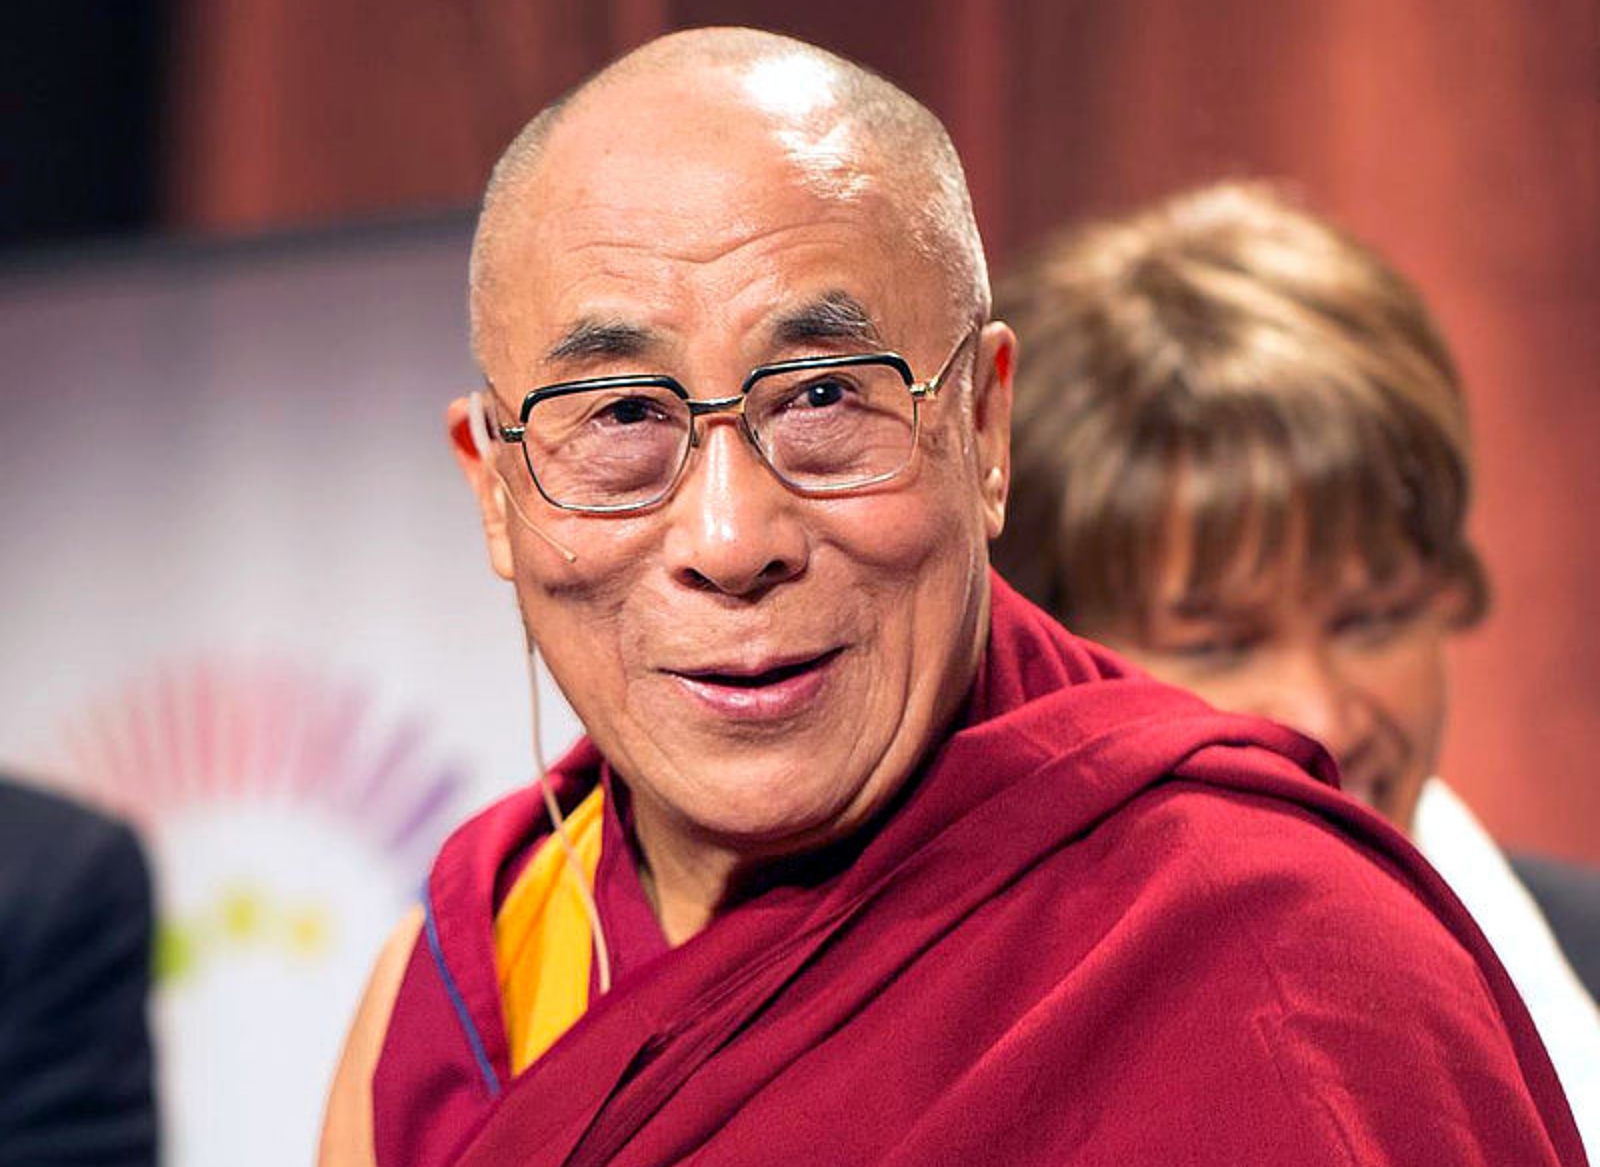 Seeking Spiritual Wisdom? Take a Trip to Where the Dalai Lama Lives